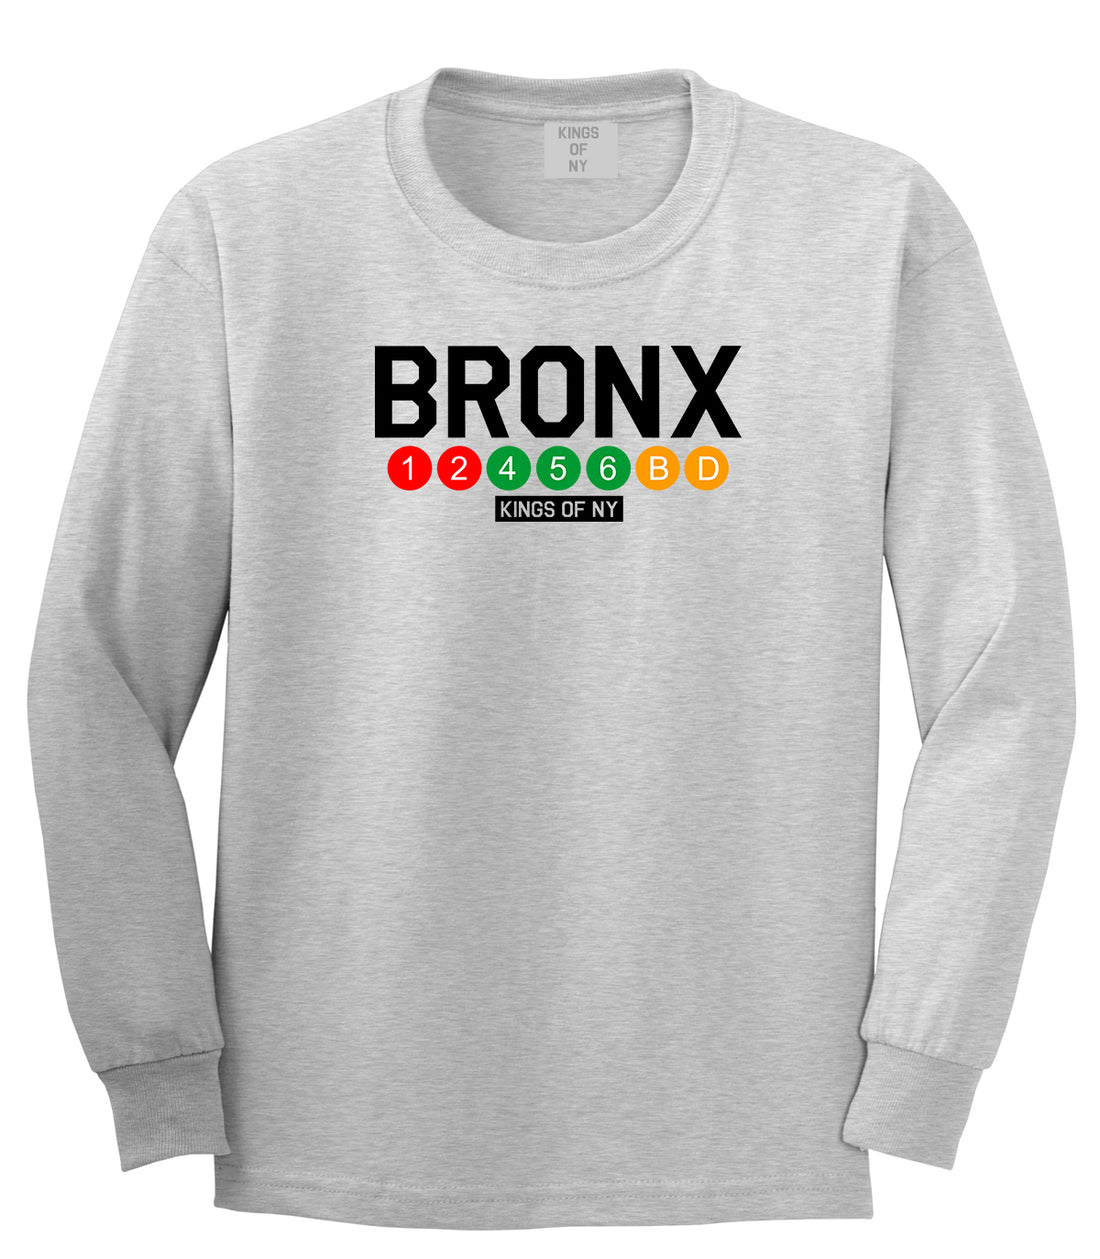 Bronx Transit Logos Long Sleeve T-Shirt in Grey